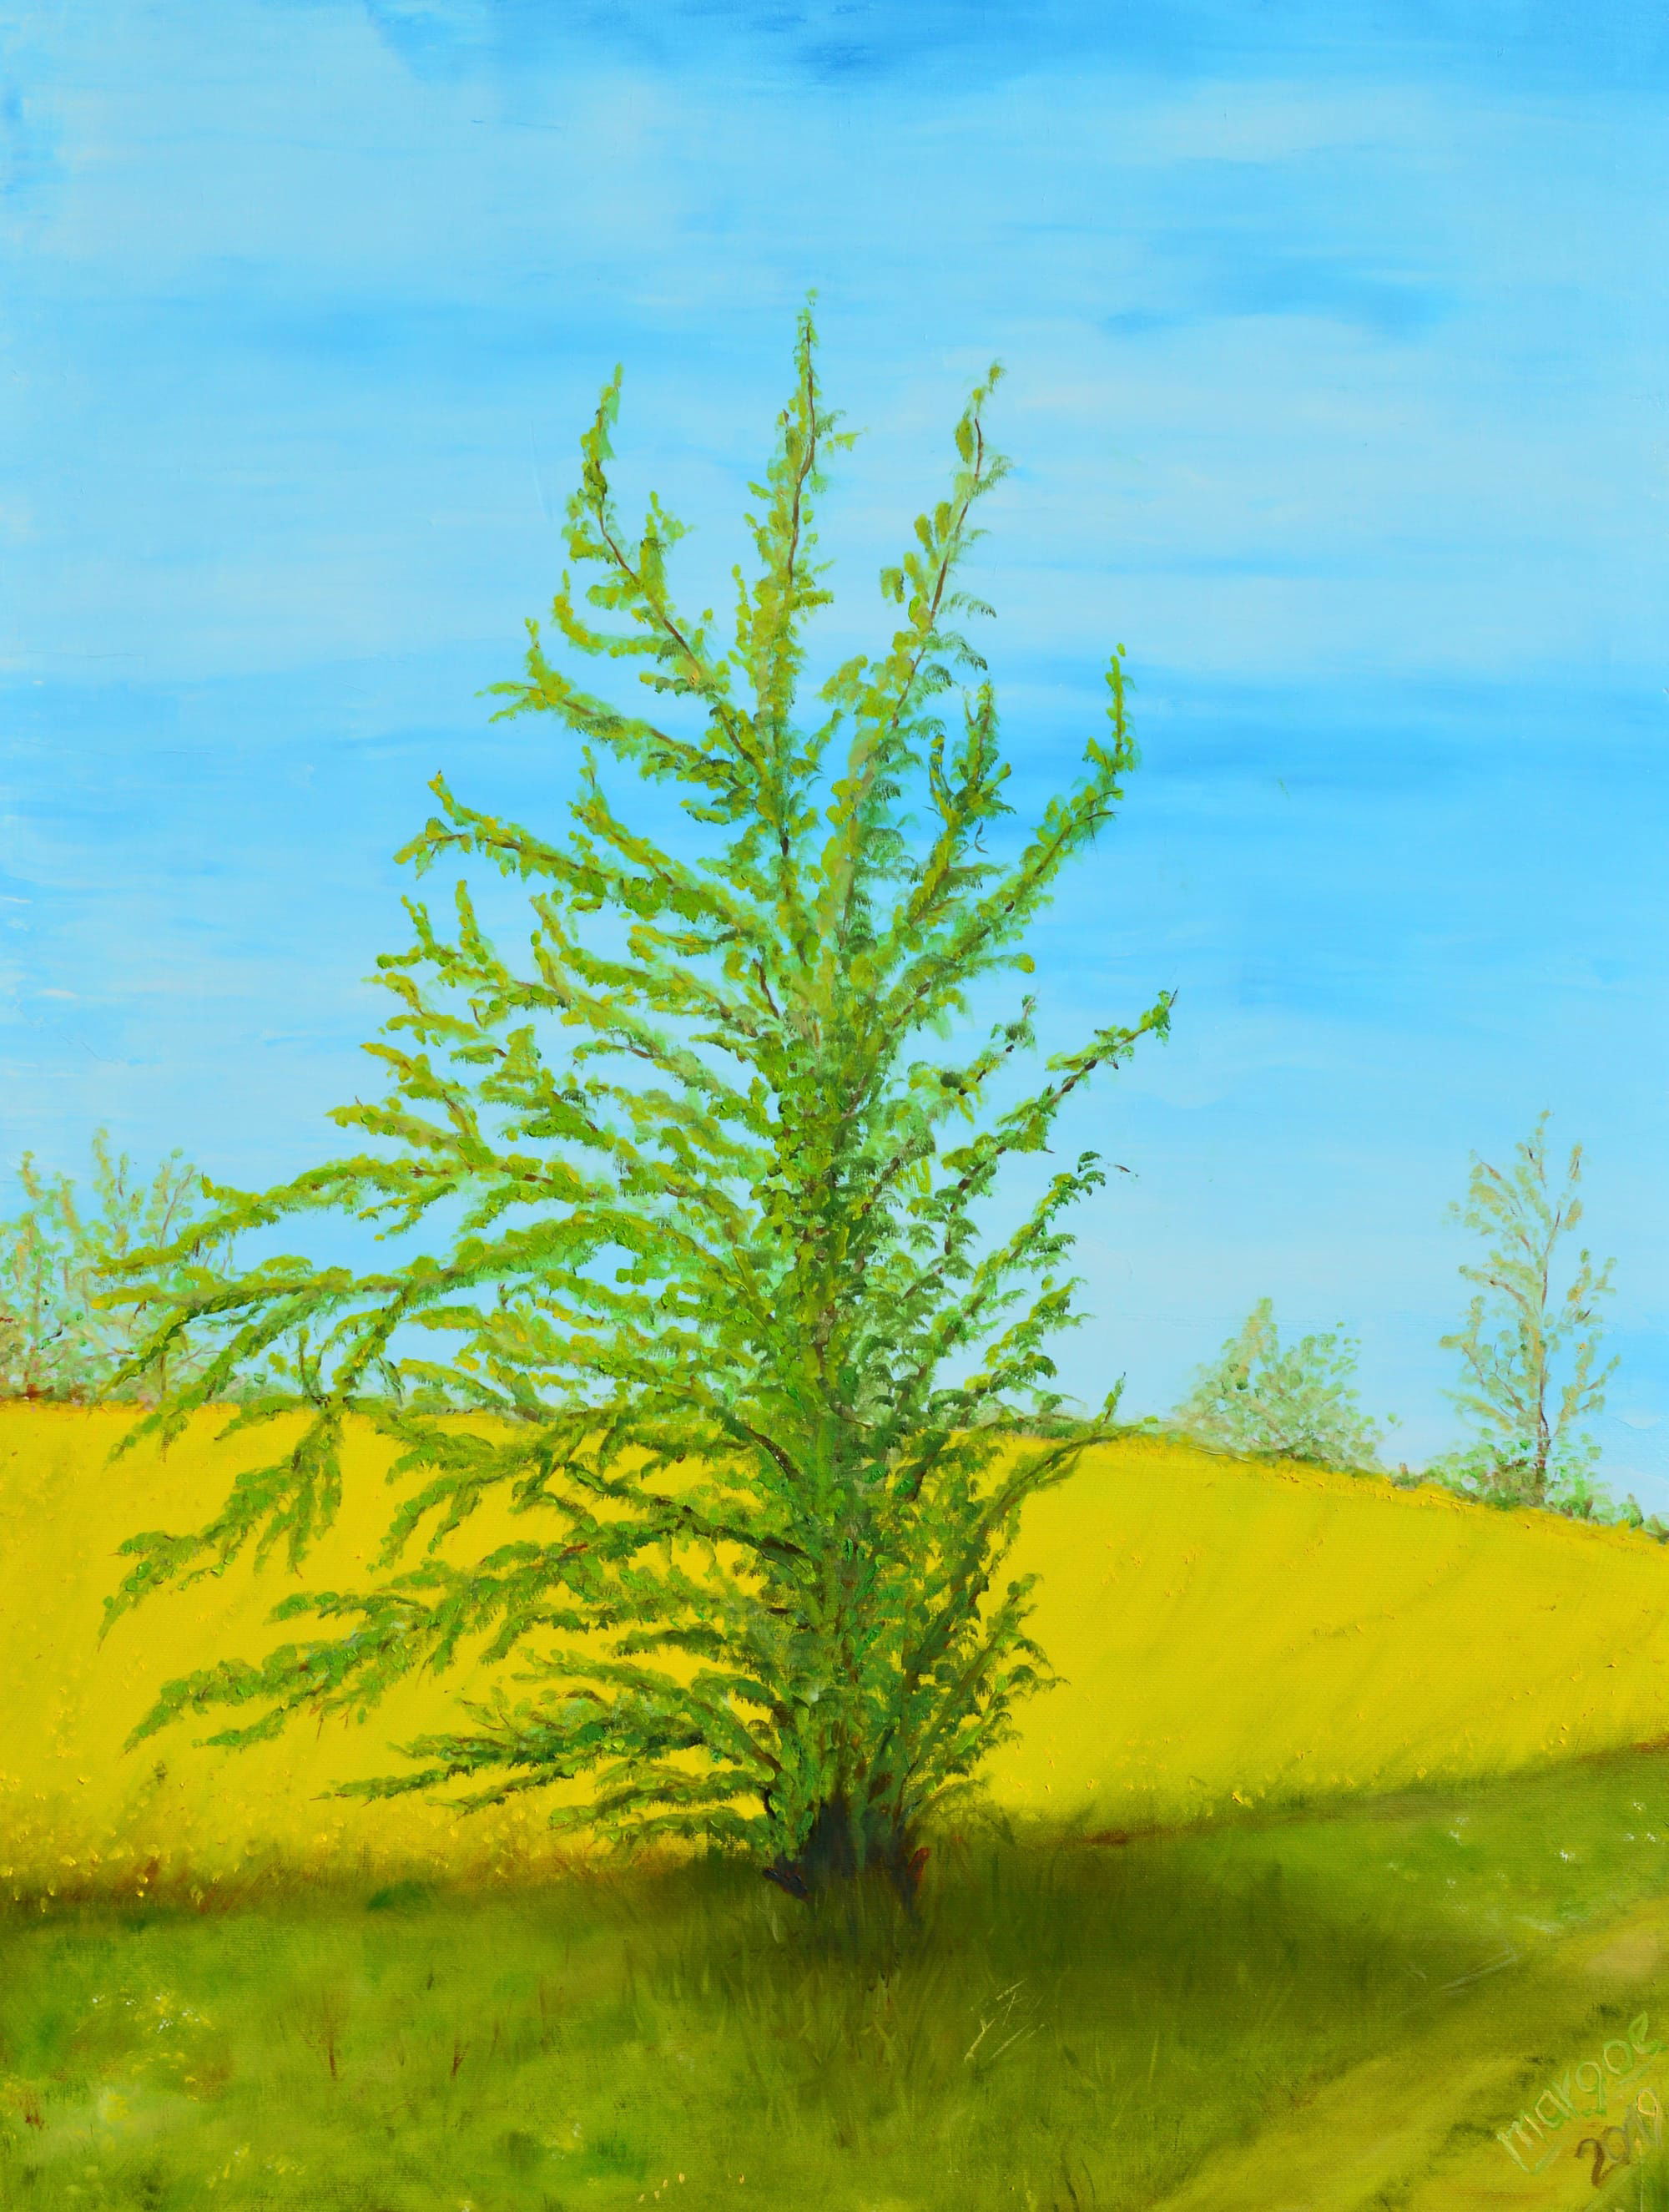 Der schiefe Baum von Marxhagen, 80 x 60 cm - Öl auf Leinwand, (2019)